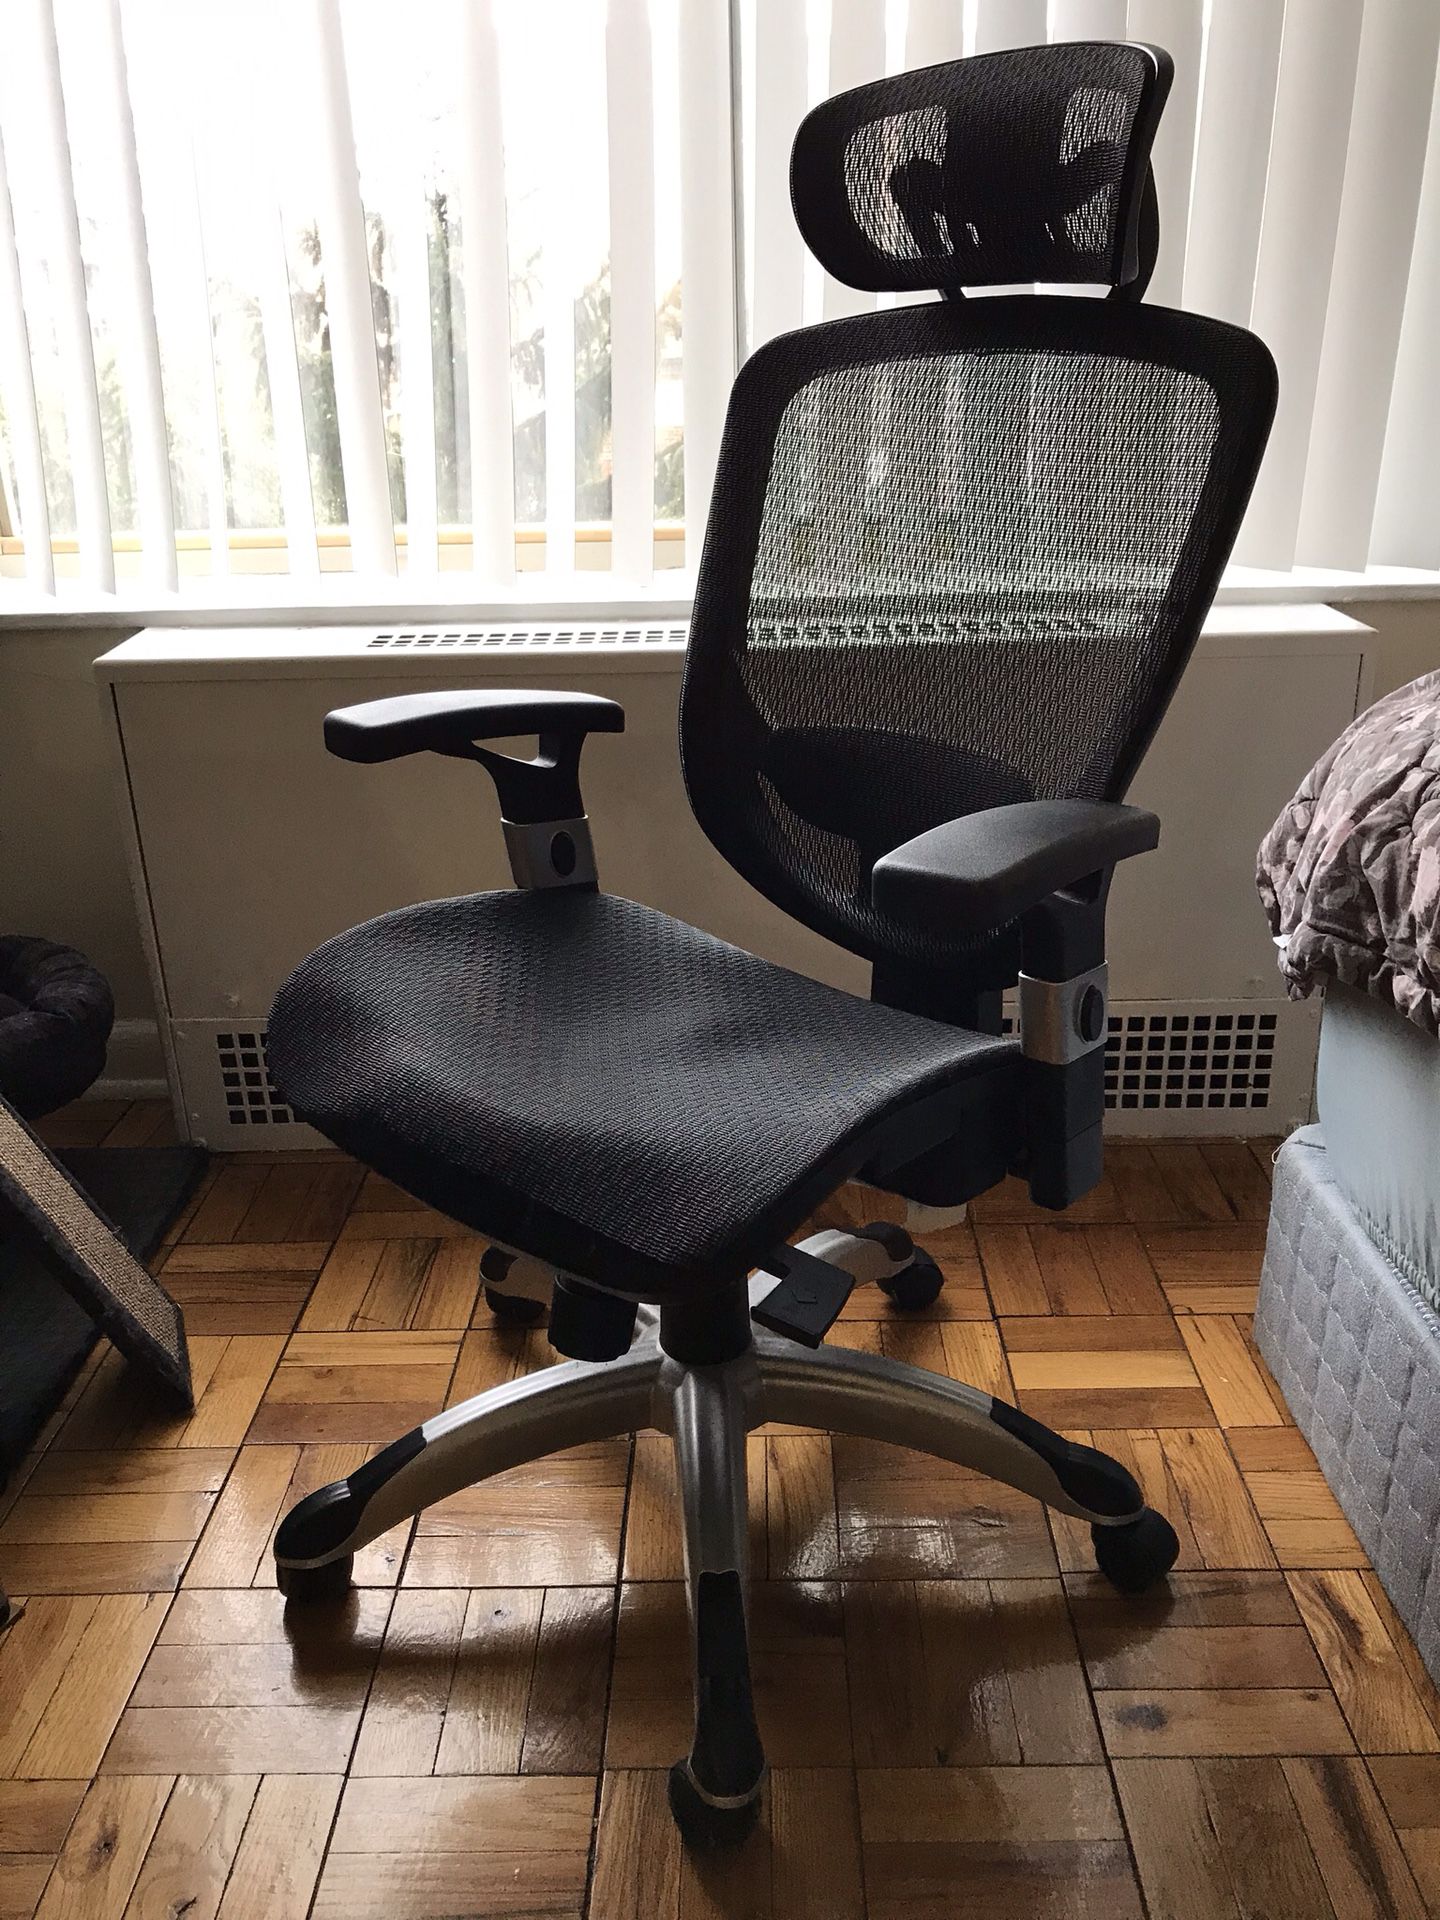 Staples Hyken Desk Chair - Black, Mesh, Headrest